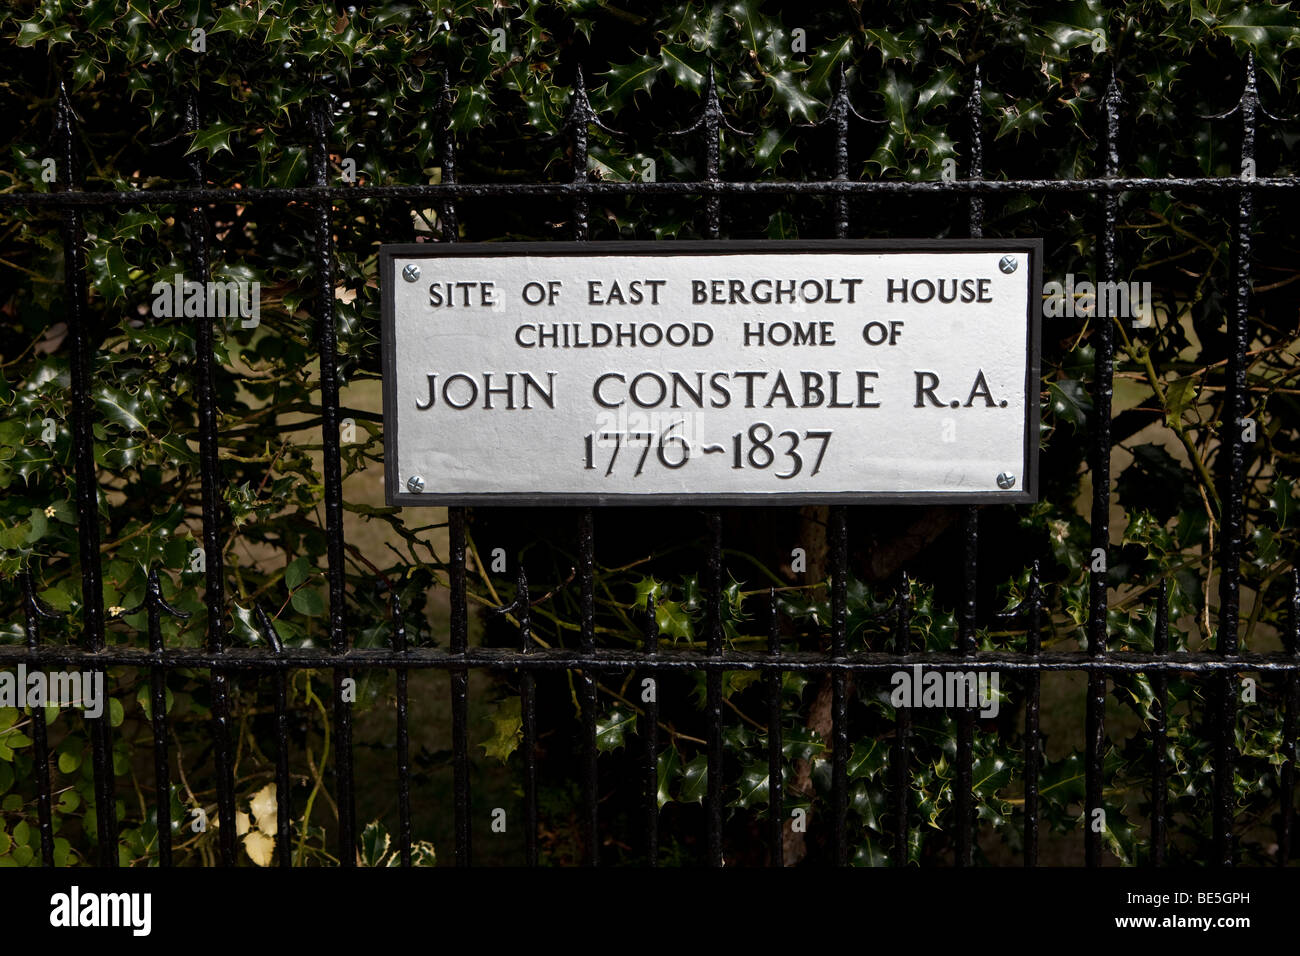 L'emplacement de East Bergholt House, maison d'enfance de John Constable R.A 1776-1837. Banque D'Images